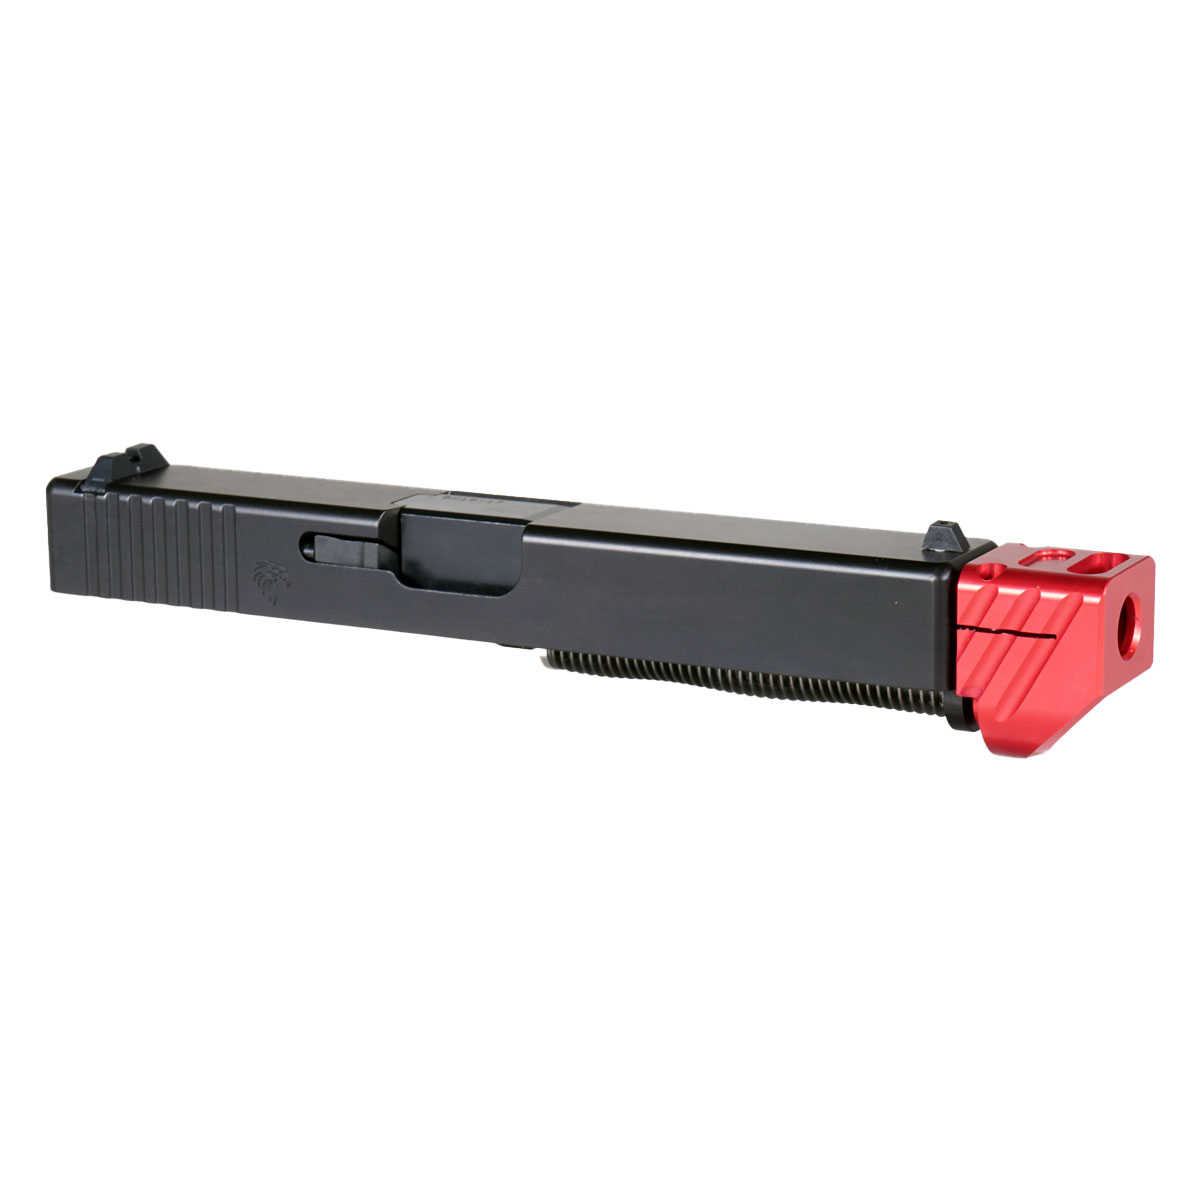 OTD 'Boomerango V3 w/ Red Compensator' 9mm Complete Slide Kit - Glock 17 Gen 1-3 Compatible